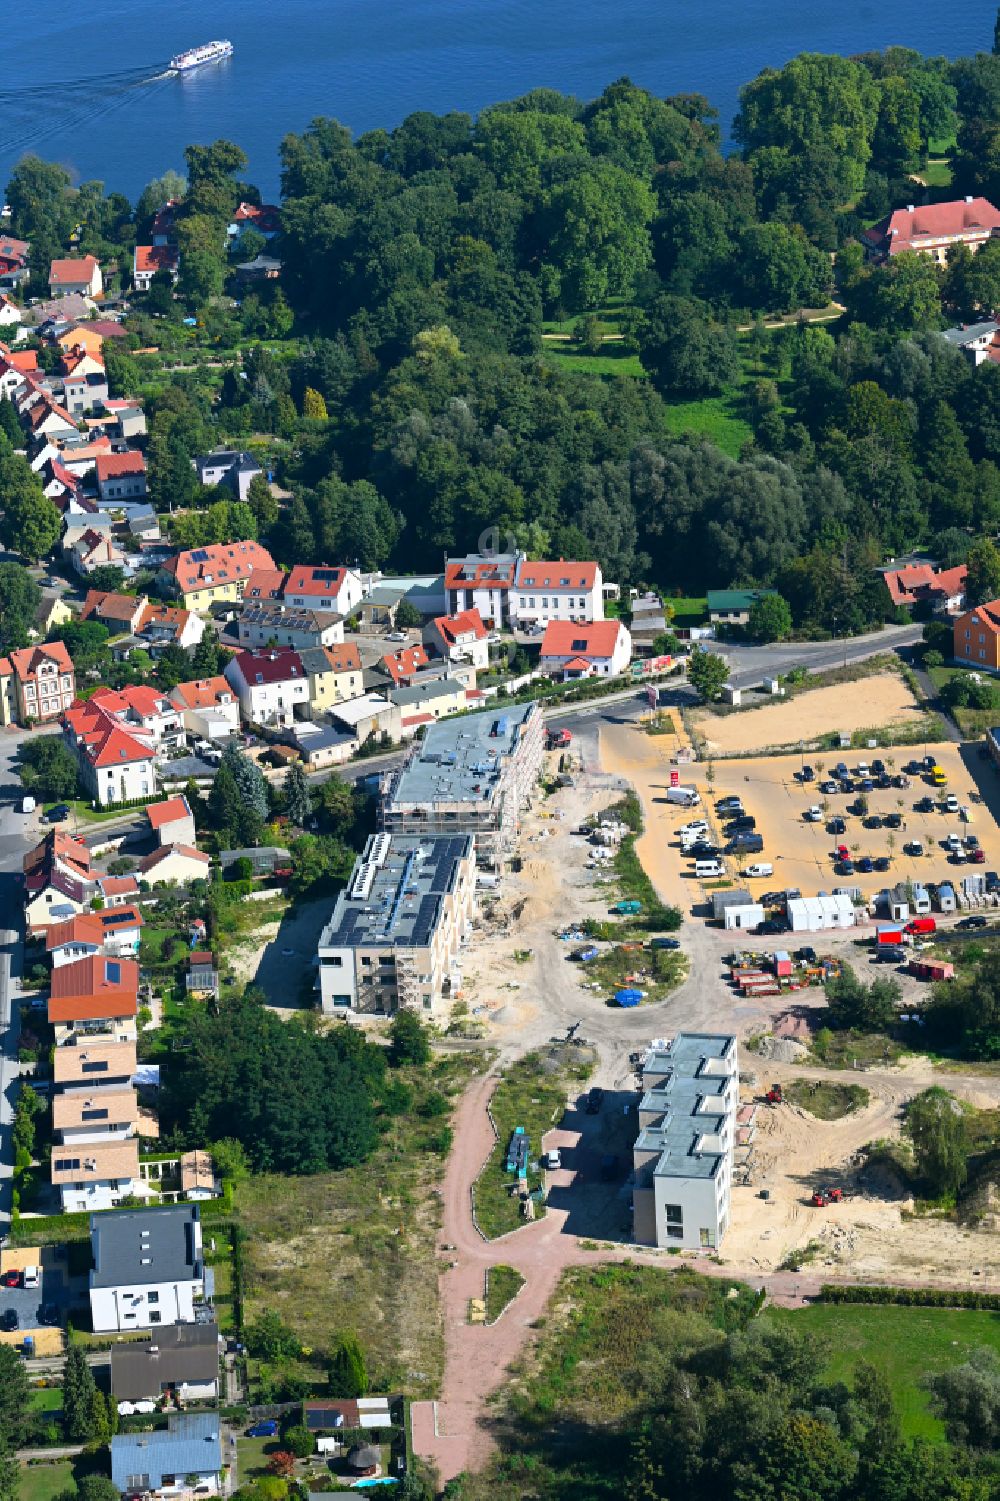 Luftbild Caputh - Baustelle zum Neubau zweier Mehrfamilien-Wohnhäuseser im Blütenviertel in Caputh im Bundesland Brandenburg, Deutschland